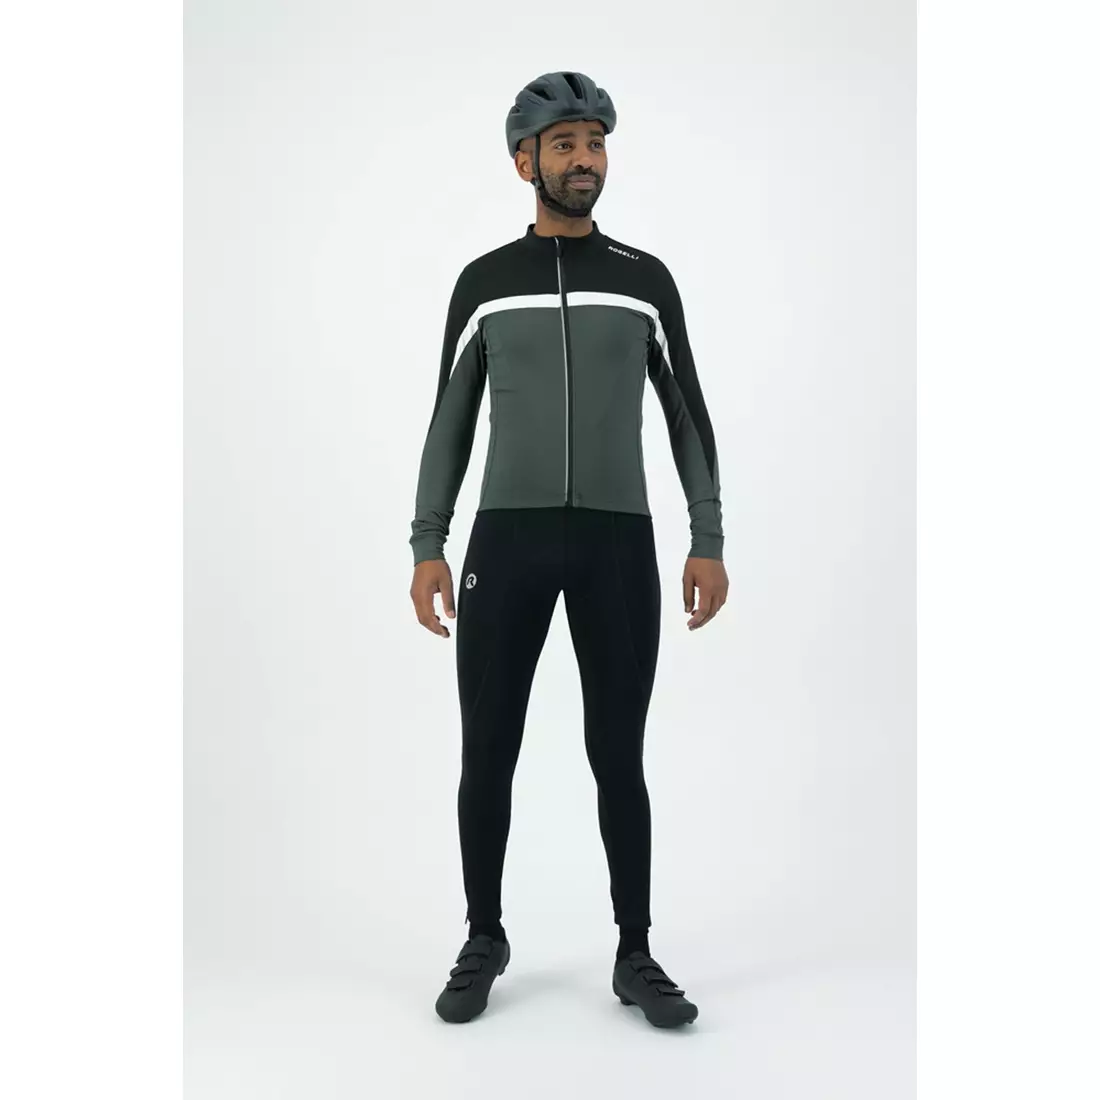 Rogelli Isoliertes Radsport-Sweatshirt für Herren COURSE, grau, ROG351007